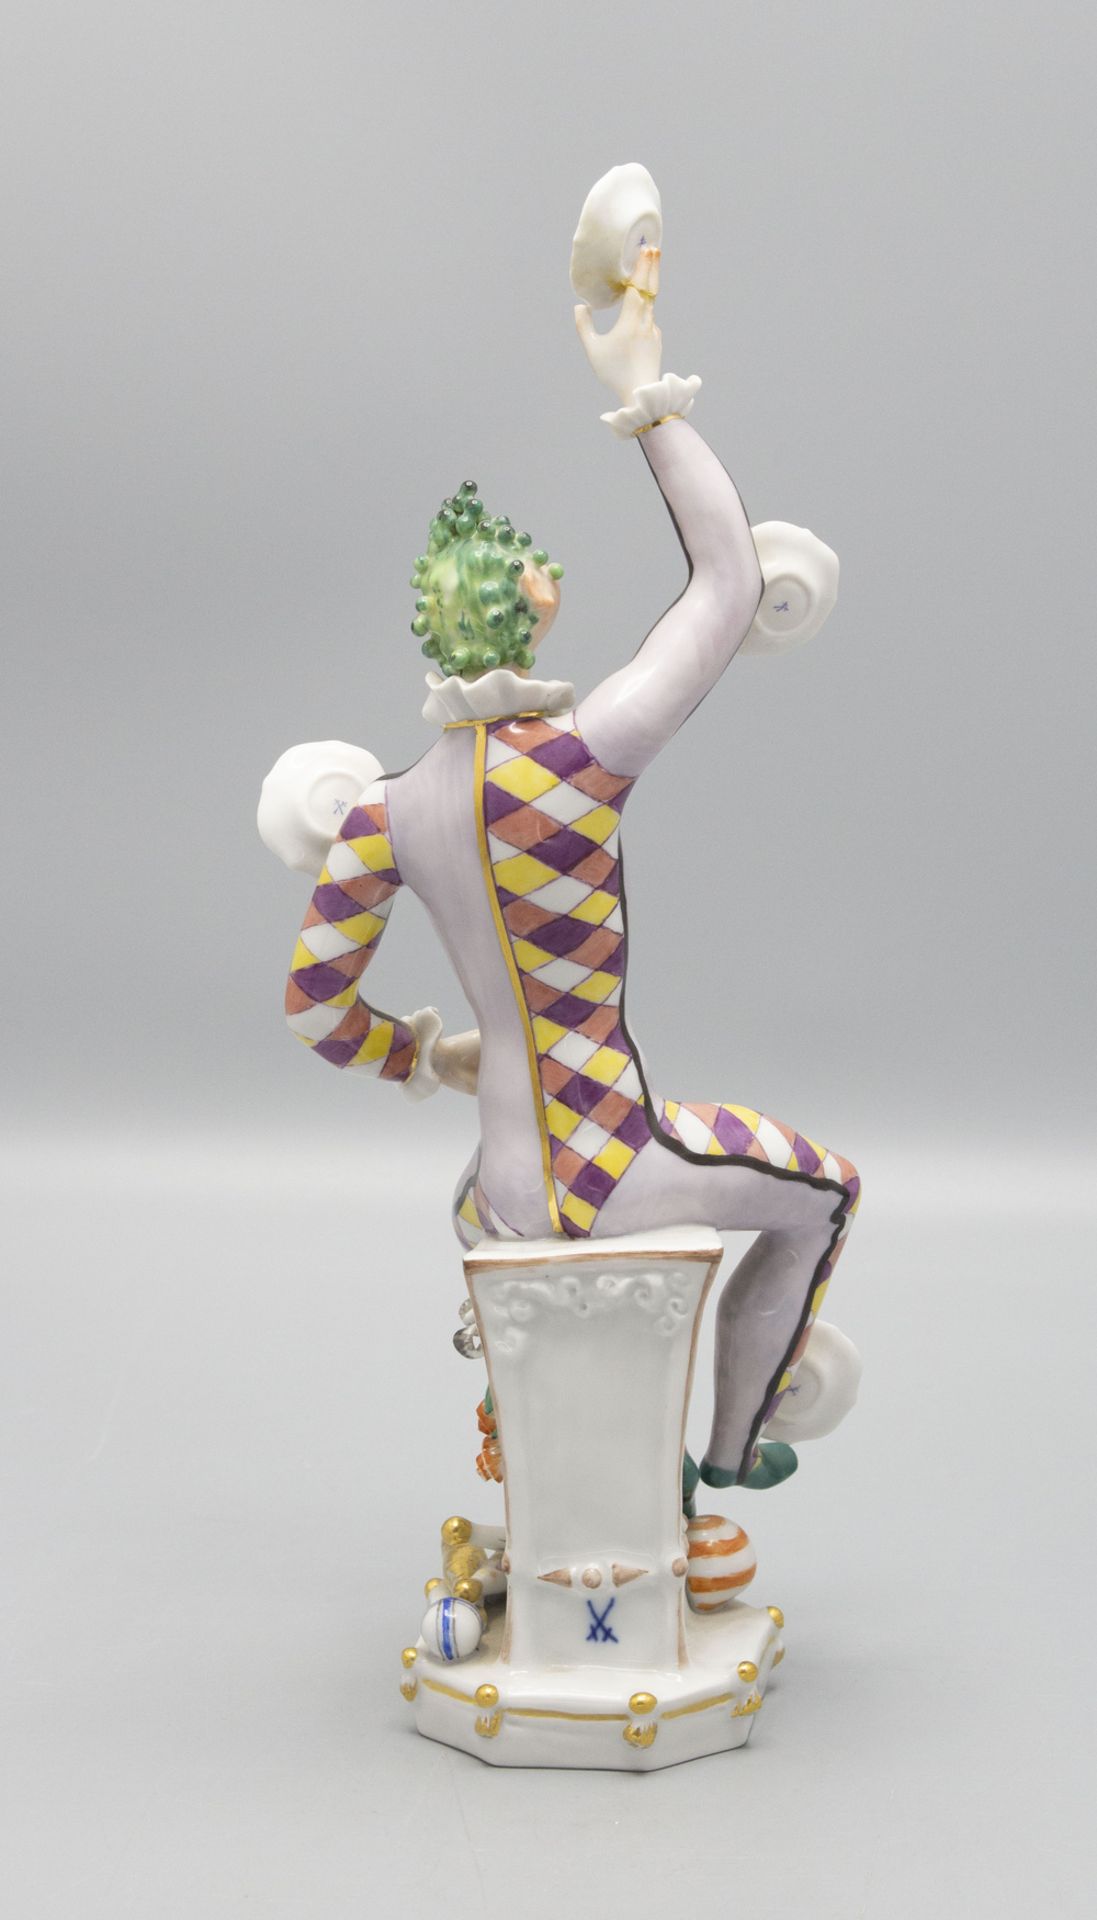 Porzellanfigur 'Der Jongleur' / A porcelain figurine 'The Juggler', Meissen, 1976 - Bild 3 aus 5